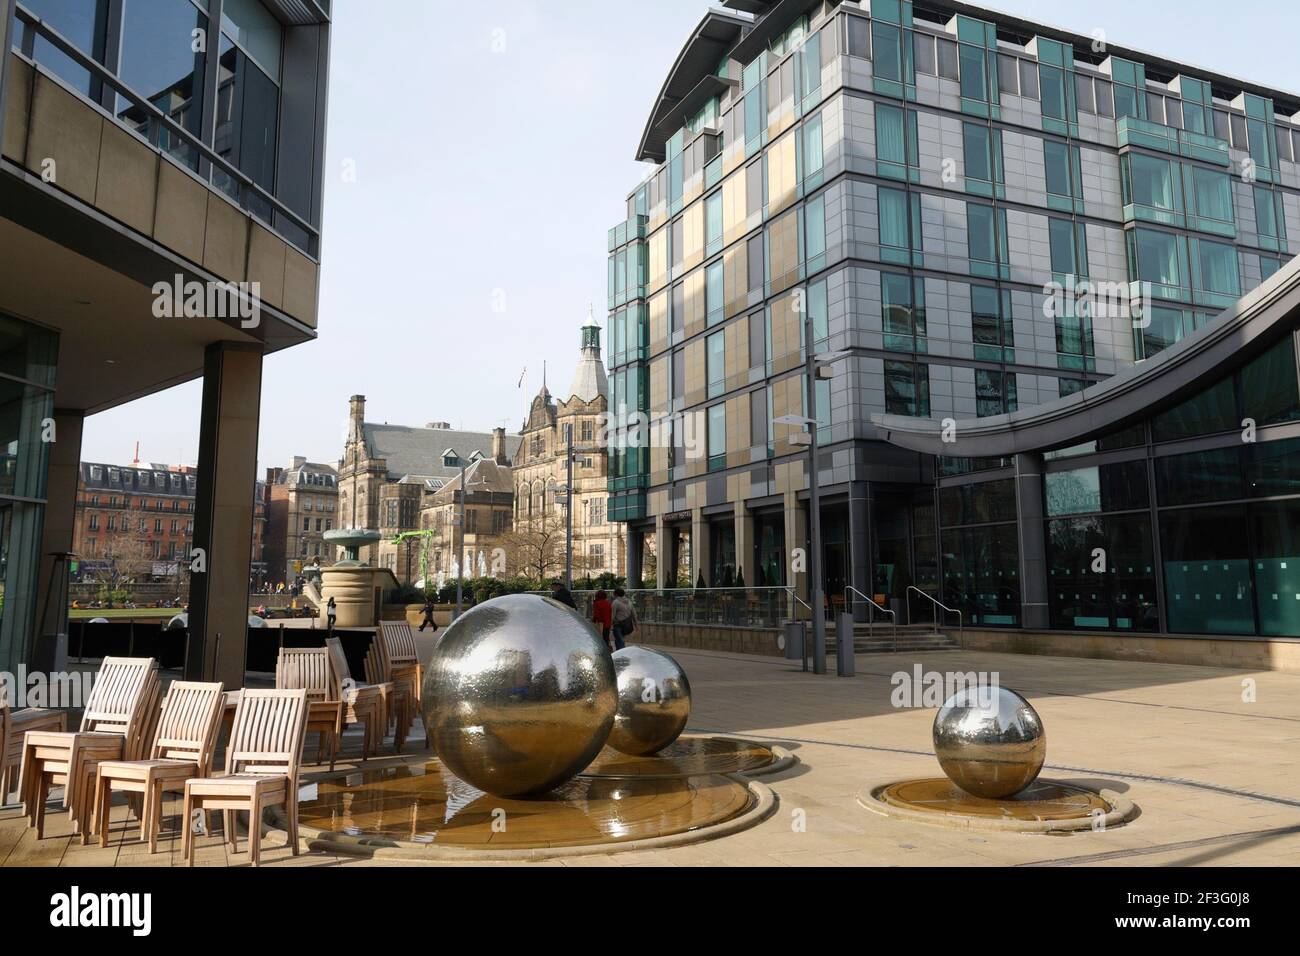 Edificio dell'hotel Mercure. Millennium Square, centro di Sheffield, Inghilterra, Regno Unito Foto Stock